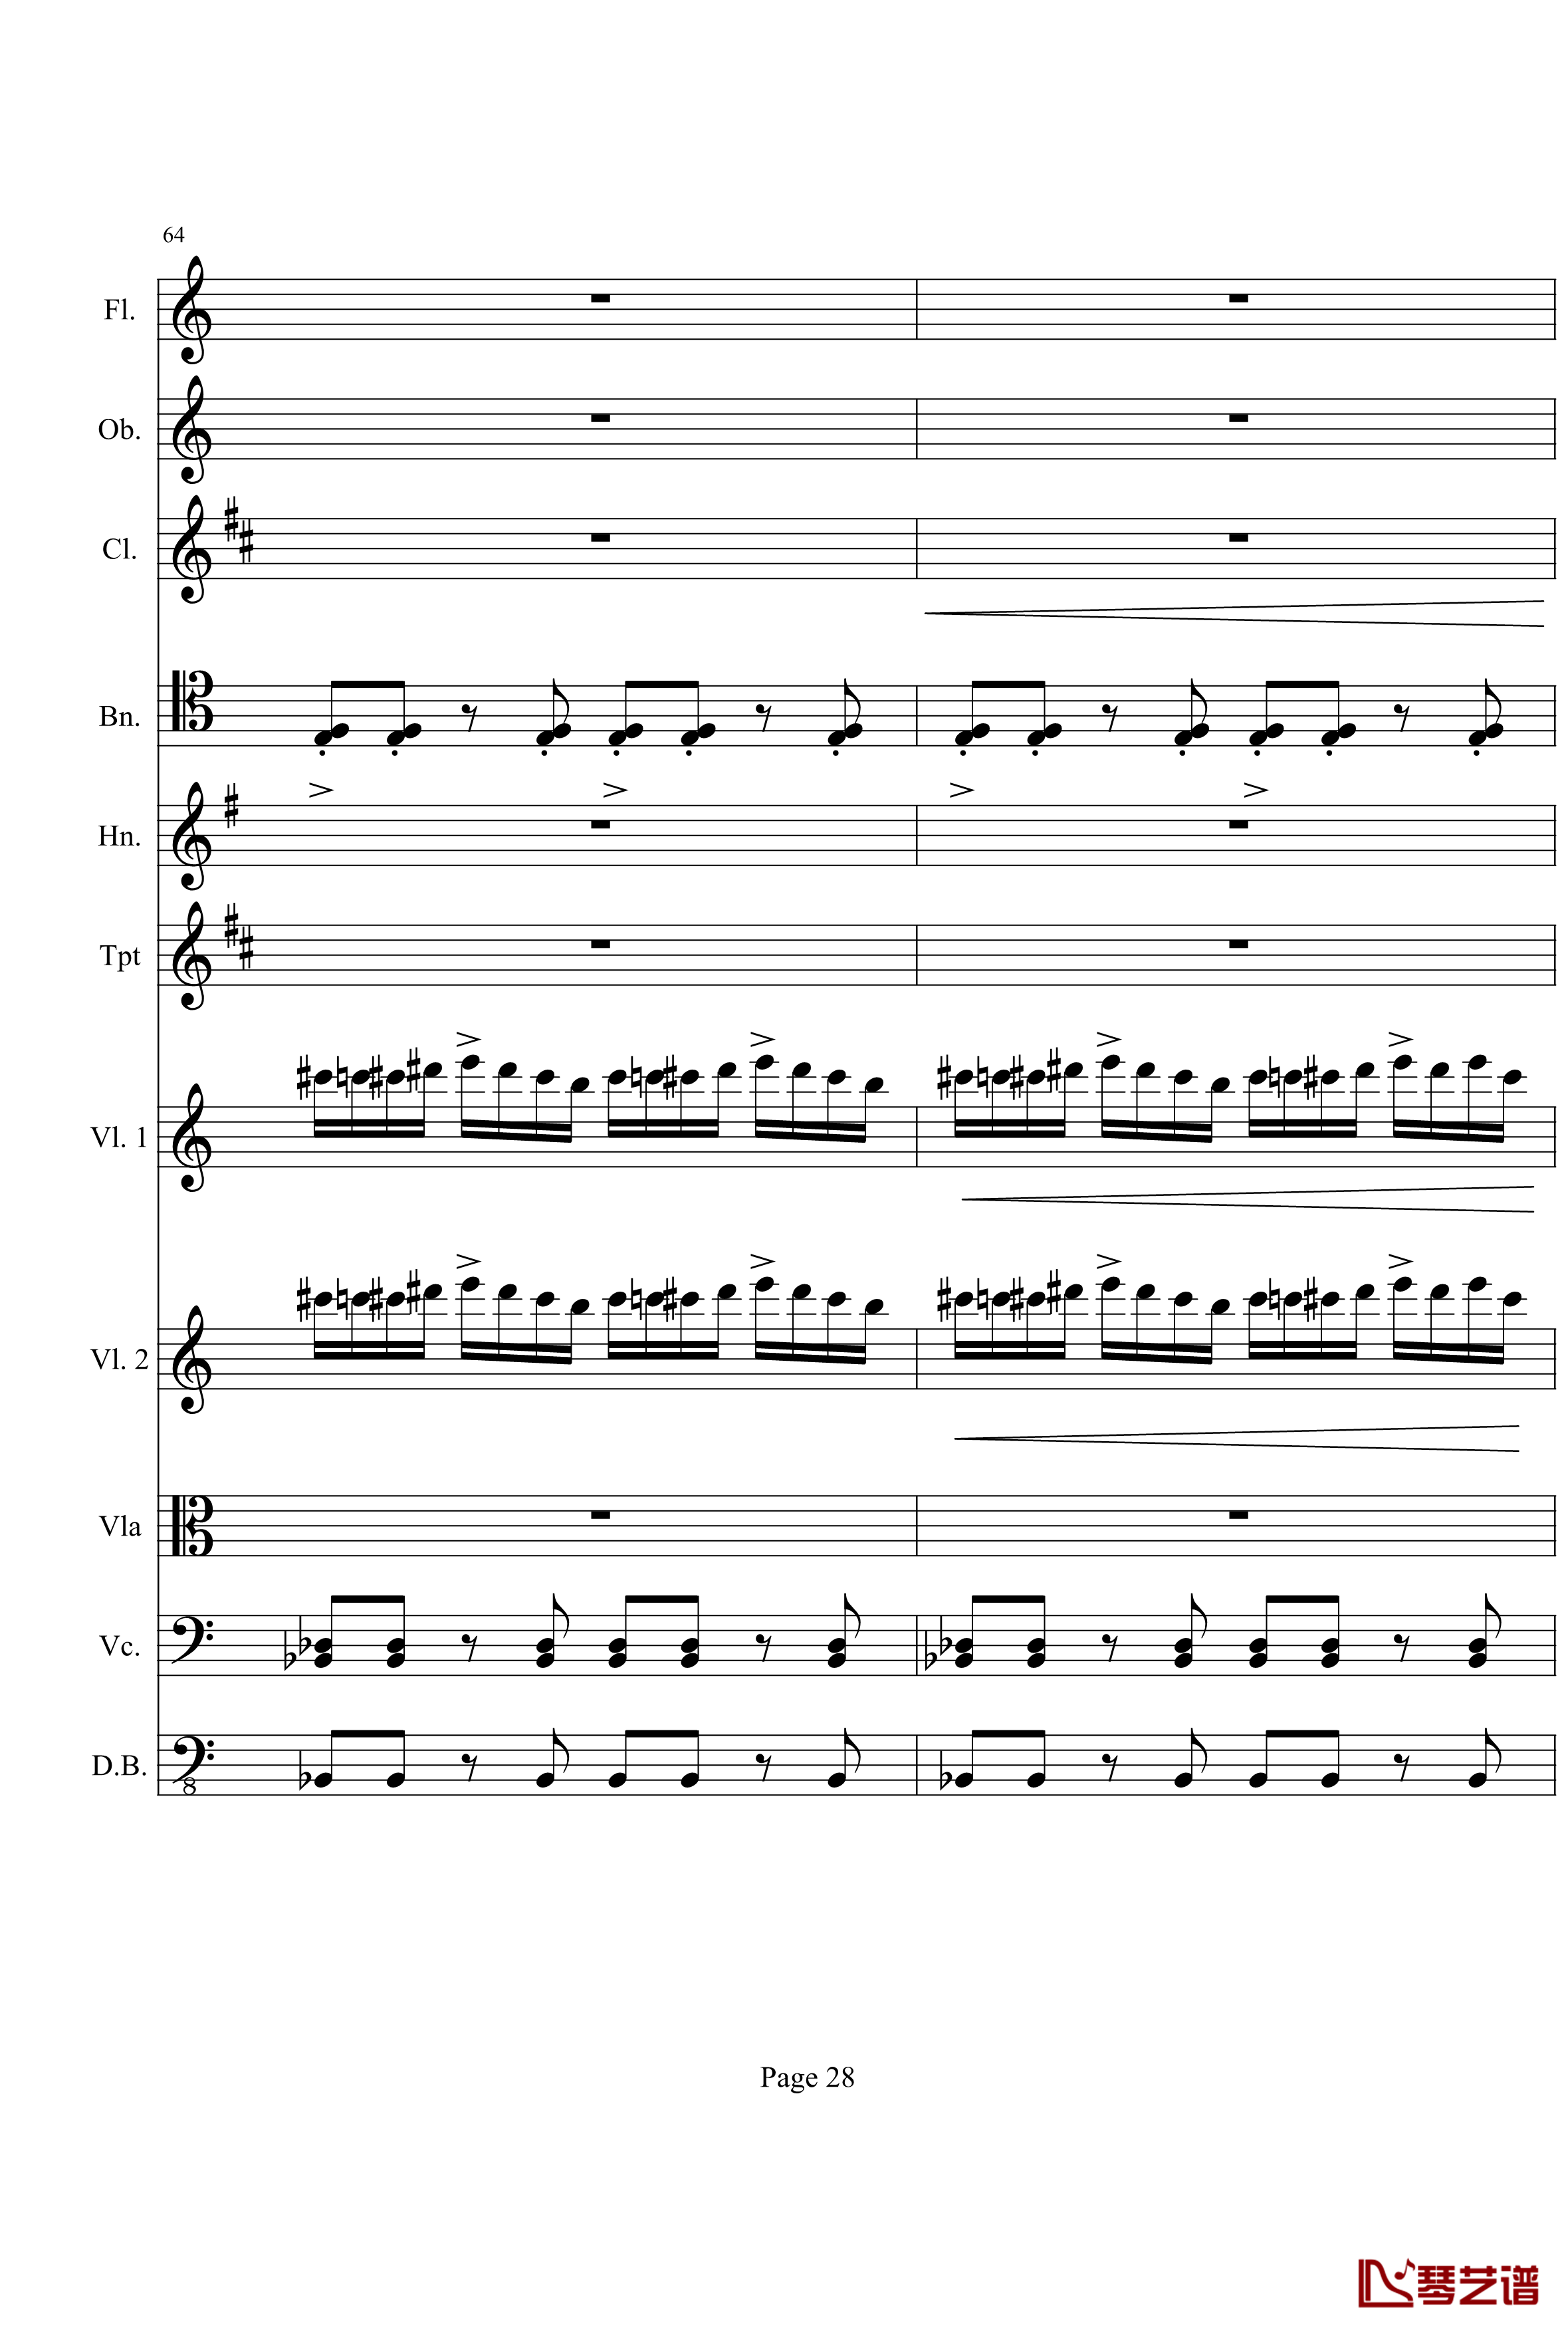 奏鸣曲之交响钢琴谱-第21首-Ⅰ-贝多芬-beethoven28